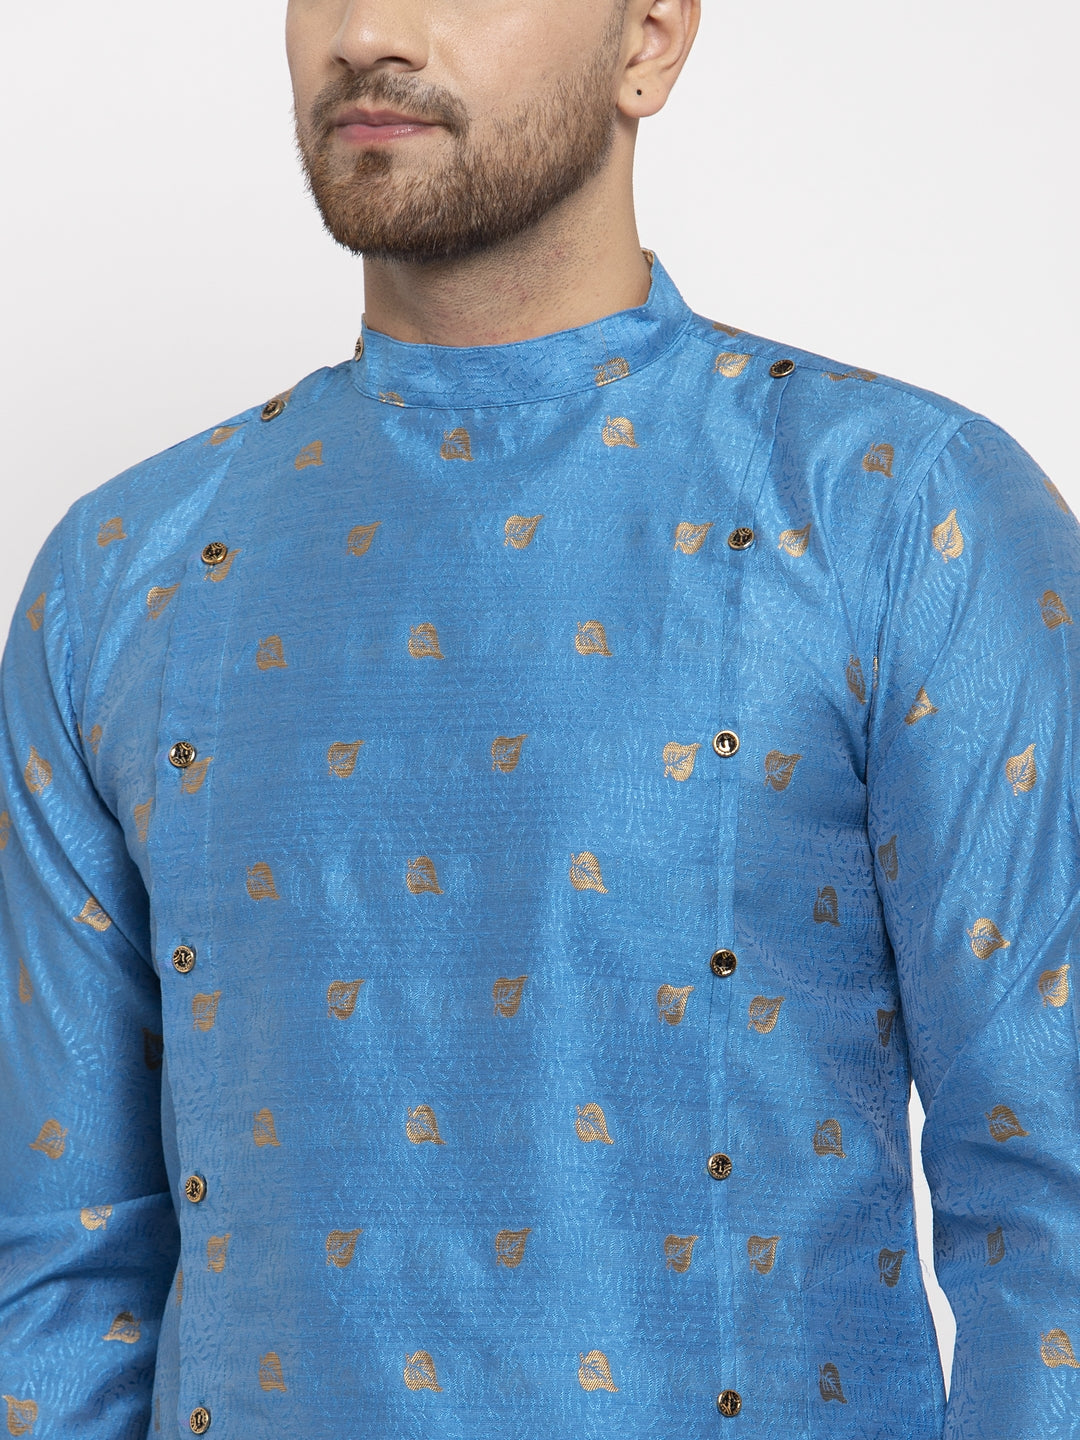 KLOTTHE Blue Cotton Woven Design Kurta With Pyjama